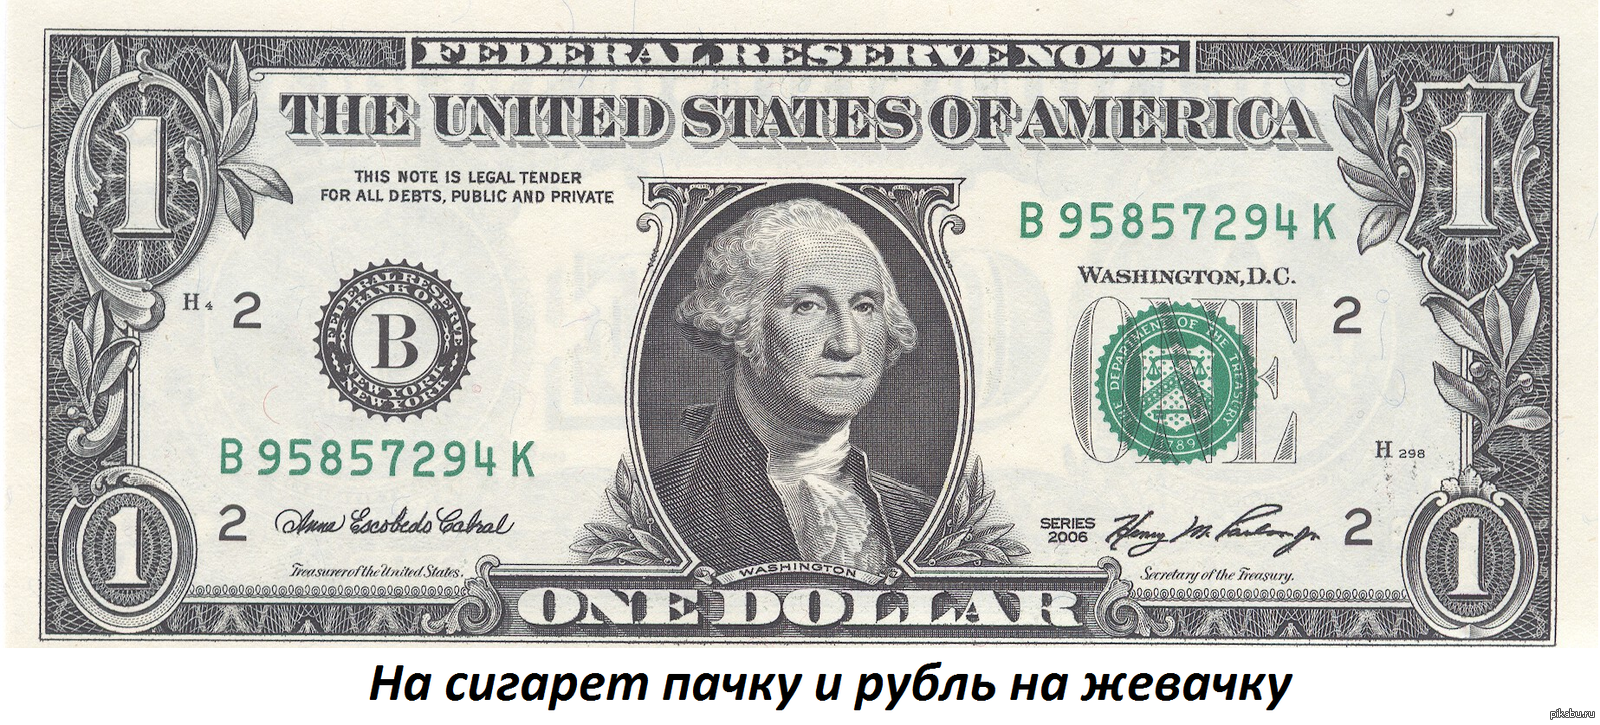 Нашел 1 доллар. Однодолларовая купюра Джордж Вашингтон. Джордж Вашингтон на купюре. 1 Доллар США. Купюра 50 долларов США.